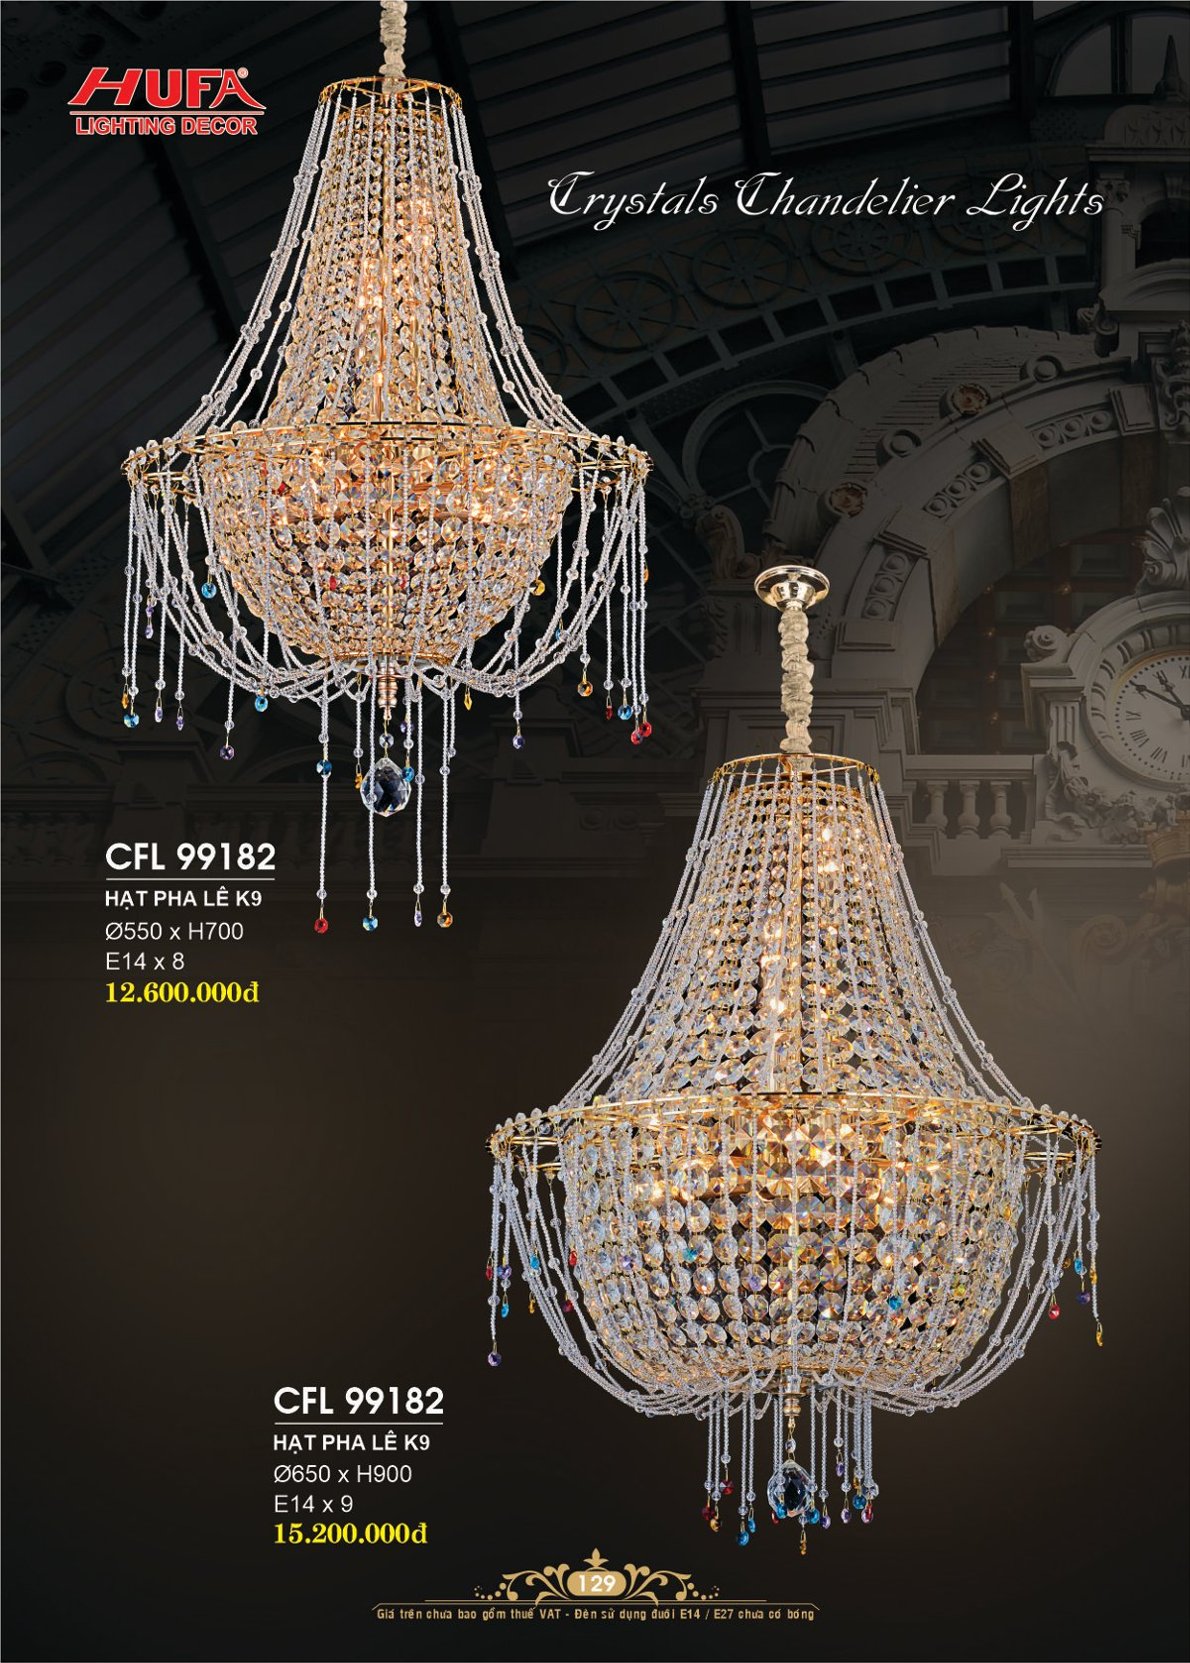 Đèn chùm pha lê, đèn trang trí Hufa CFL 2811/800L cao cấp, giá rẻ bảo hành lâu dài, hỗ trợ lắp đặt, giao hàng toàn quốc. Đèn pha lê Hufa được bảo trì trọn đời